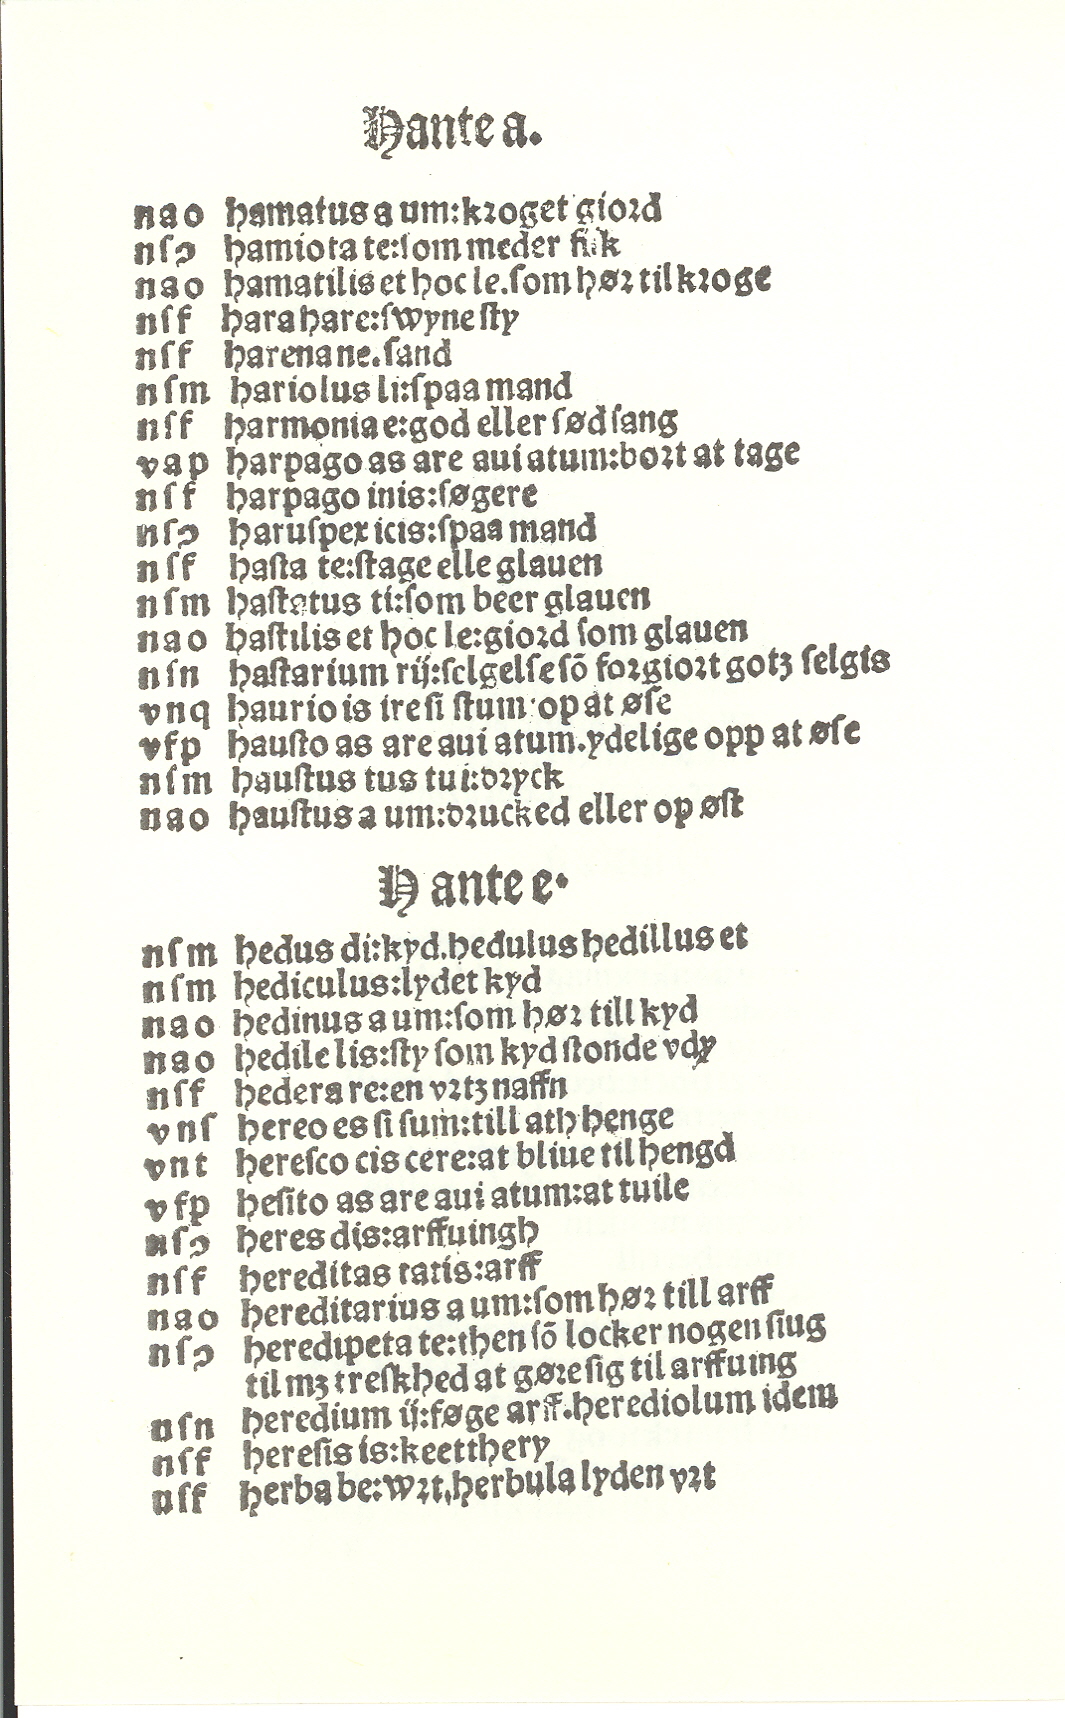 Pedersen 1510, Side: 148